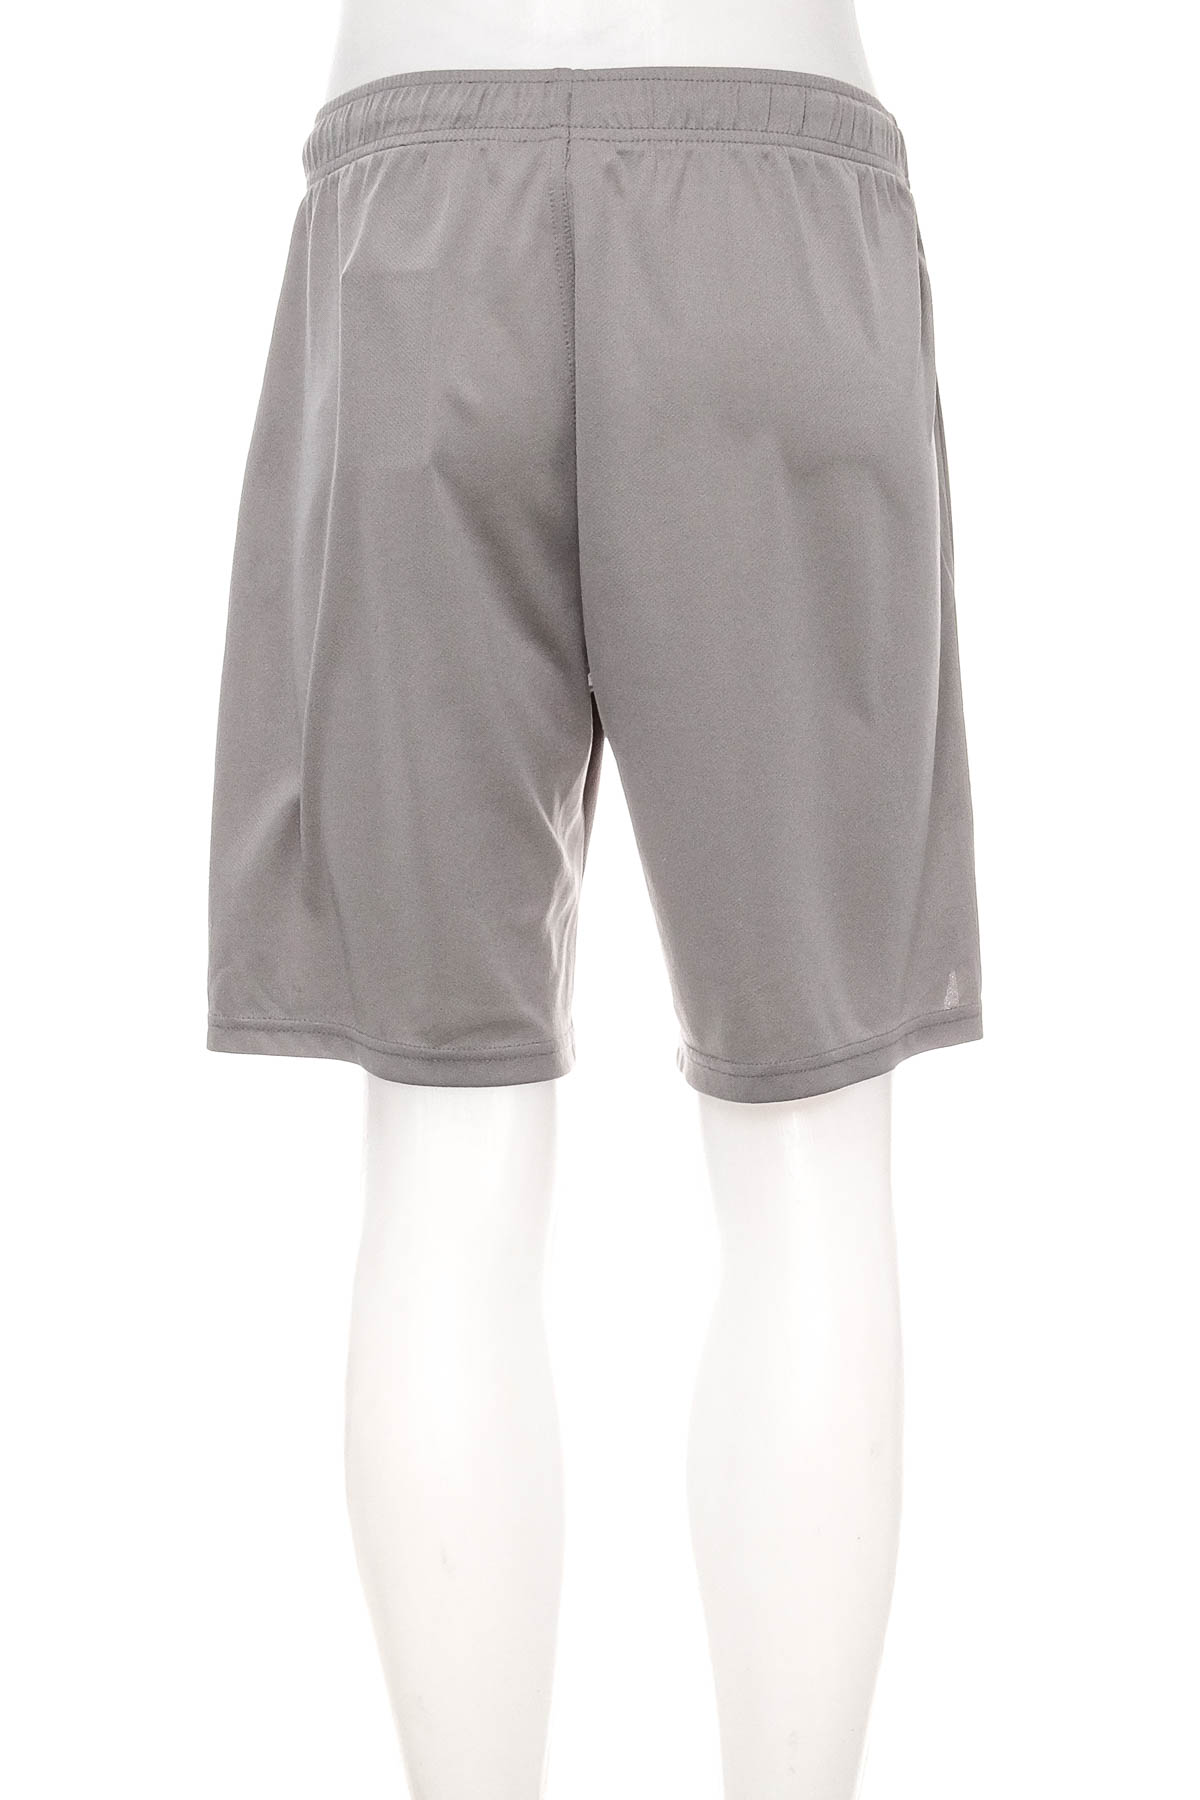 Pantaloni scurți pentru băiat - H&M Sport - 1